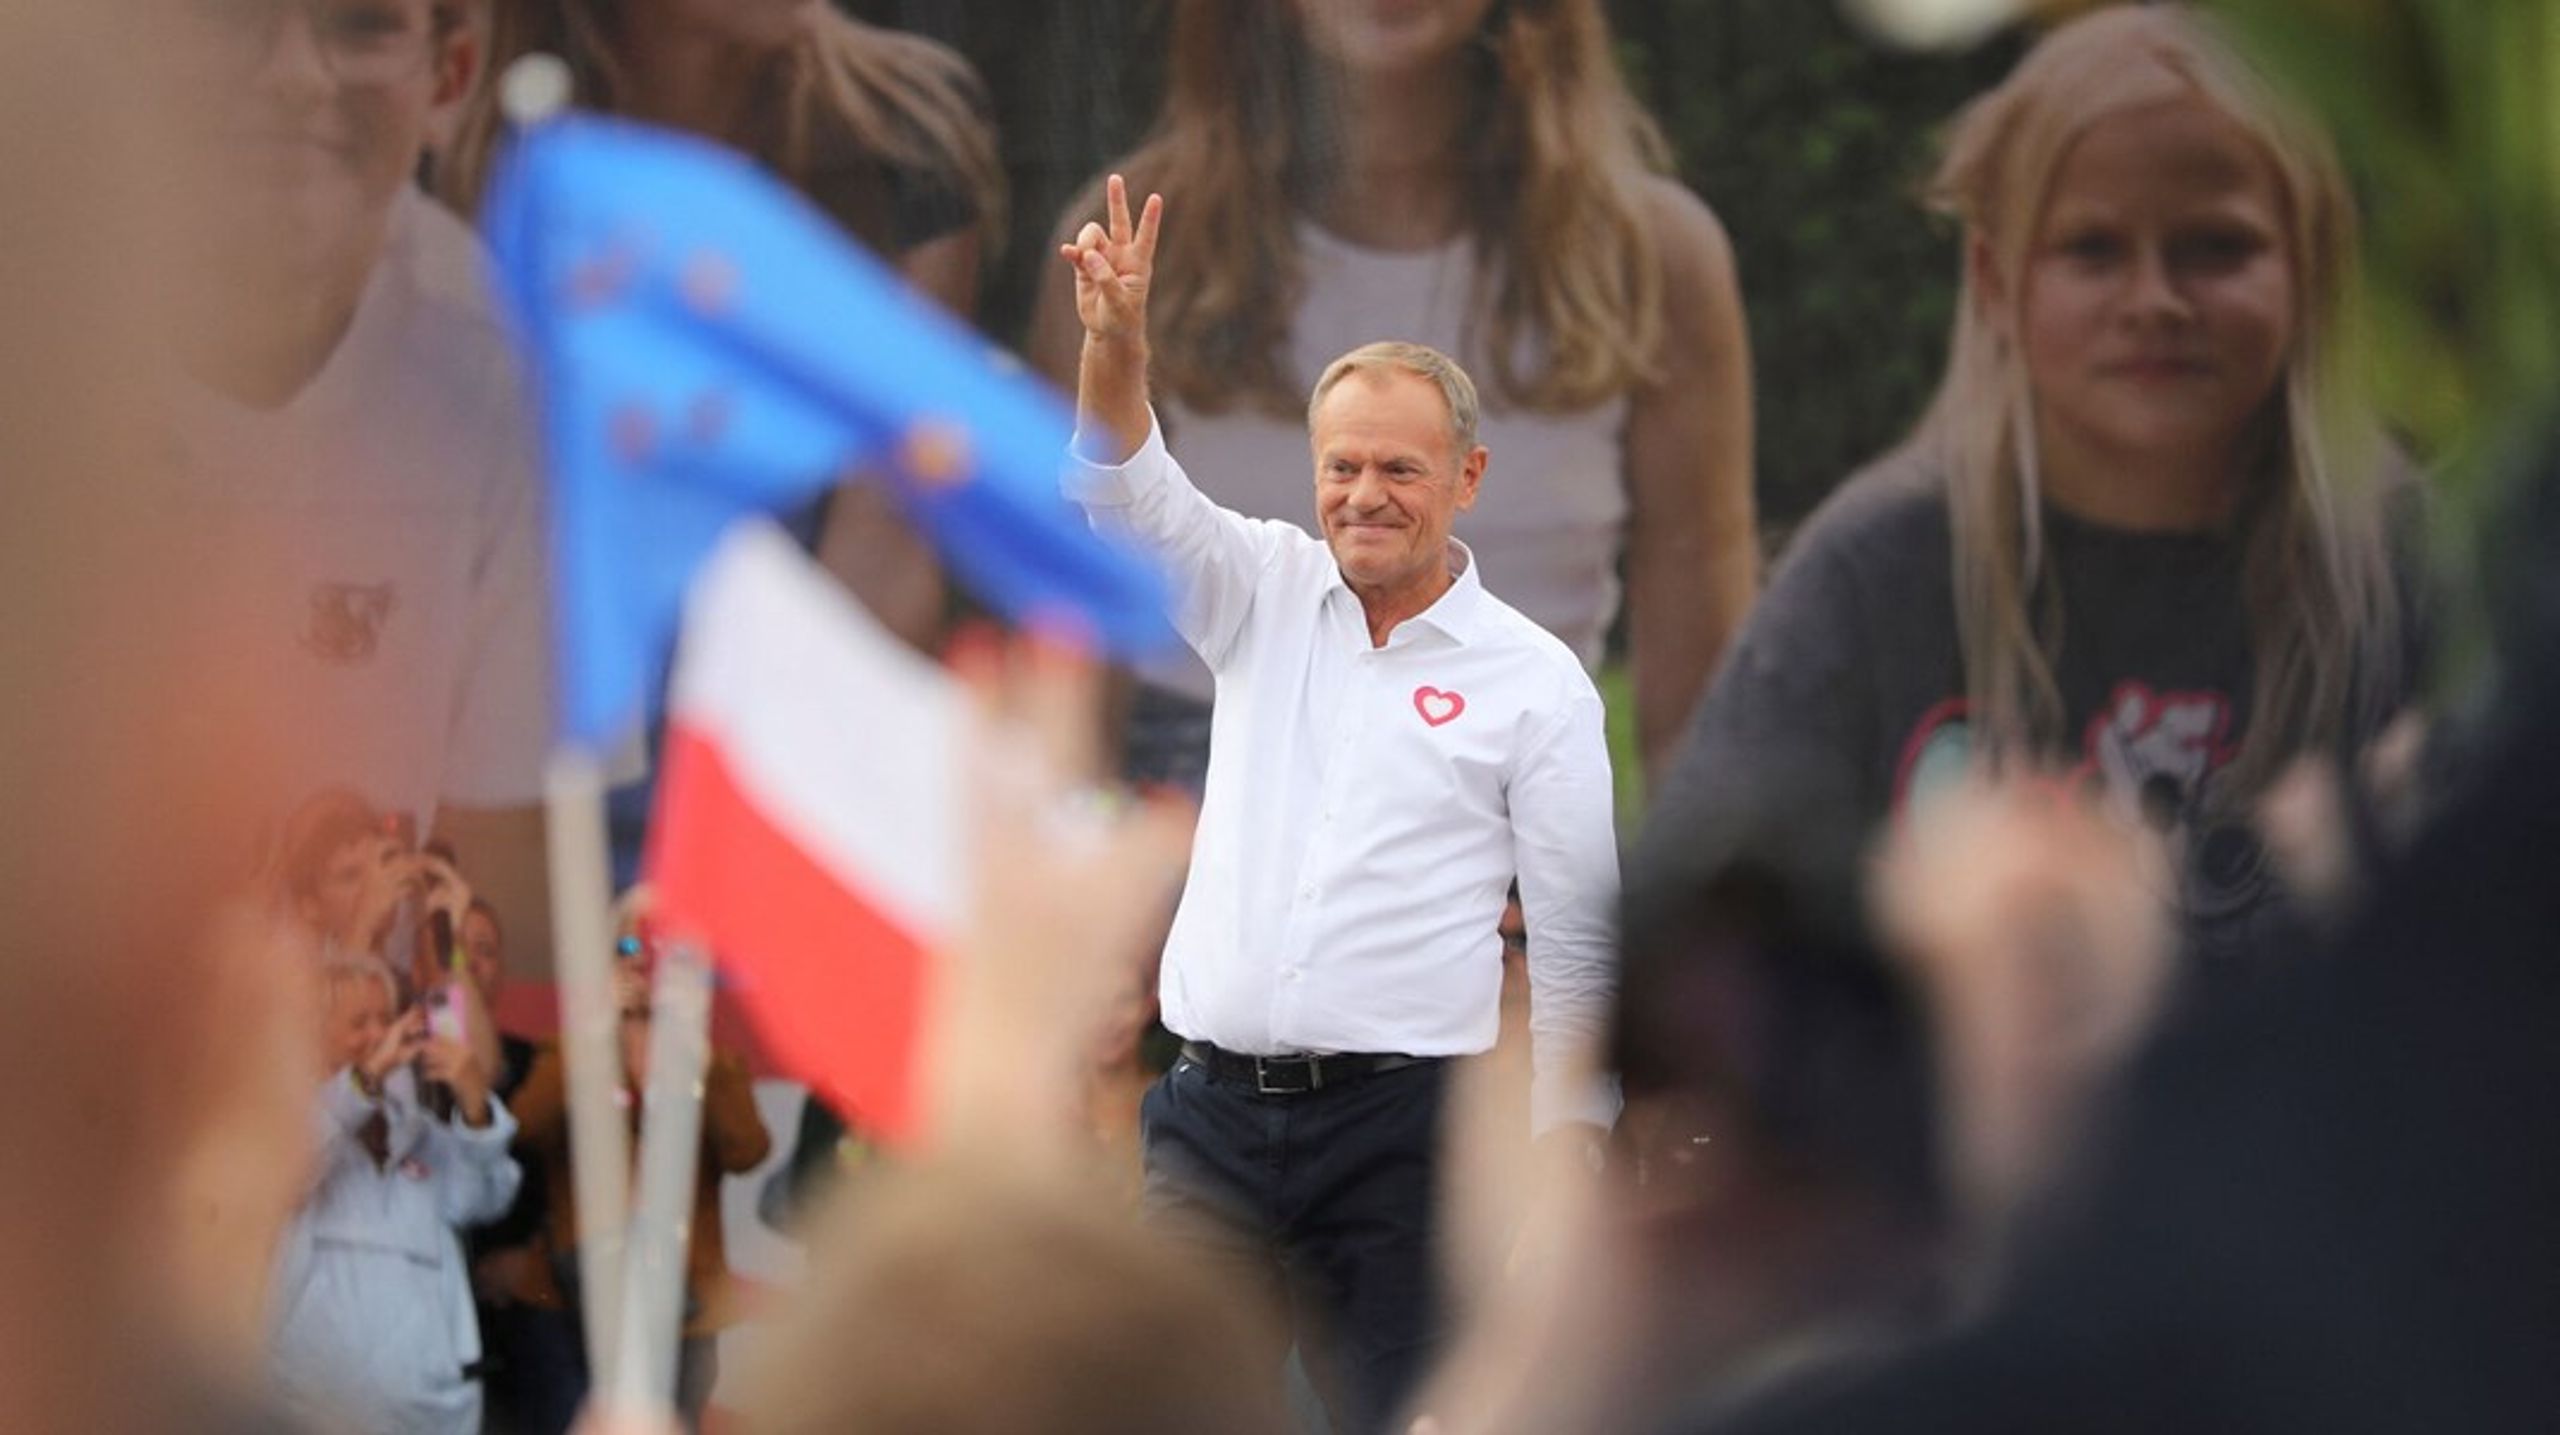 EU's tidligere rådsformand, Donald Tusk, talte foran mange tusinde mennesker i Warszawa for en uge siden. Han håber at vinde magten i Polen ved valget søndag 15. oktober.&nbsp;